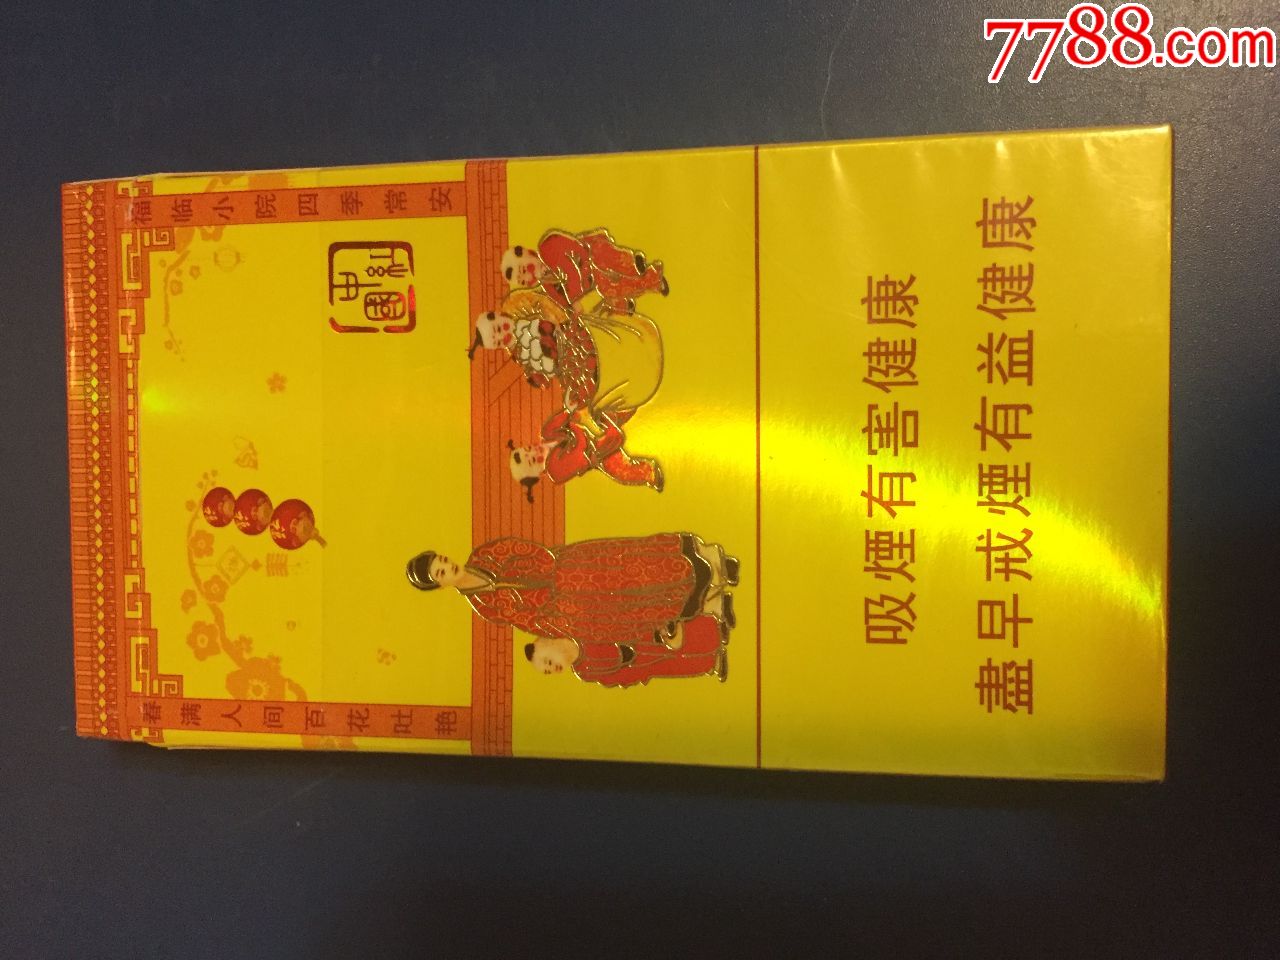 中国红烟盒